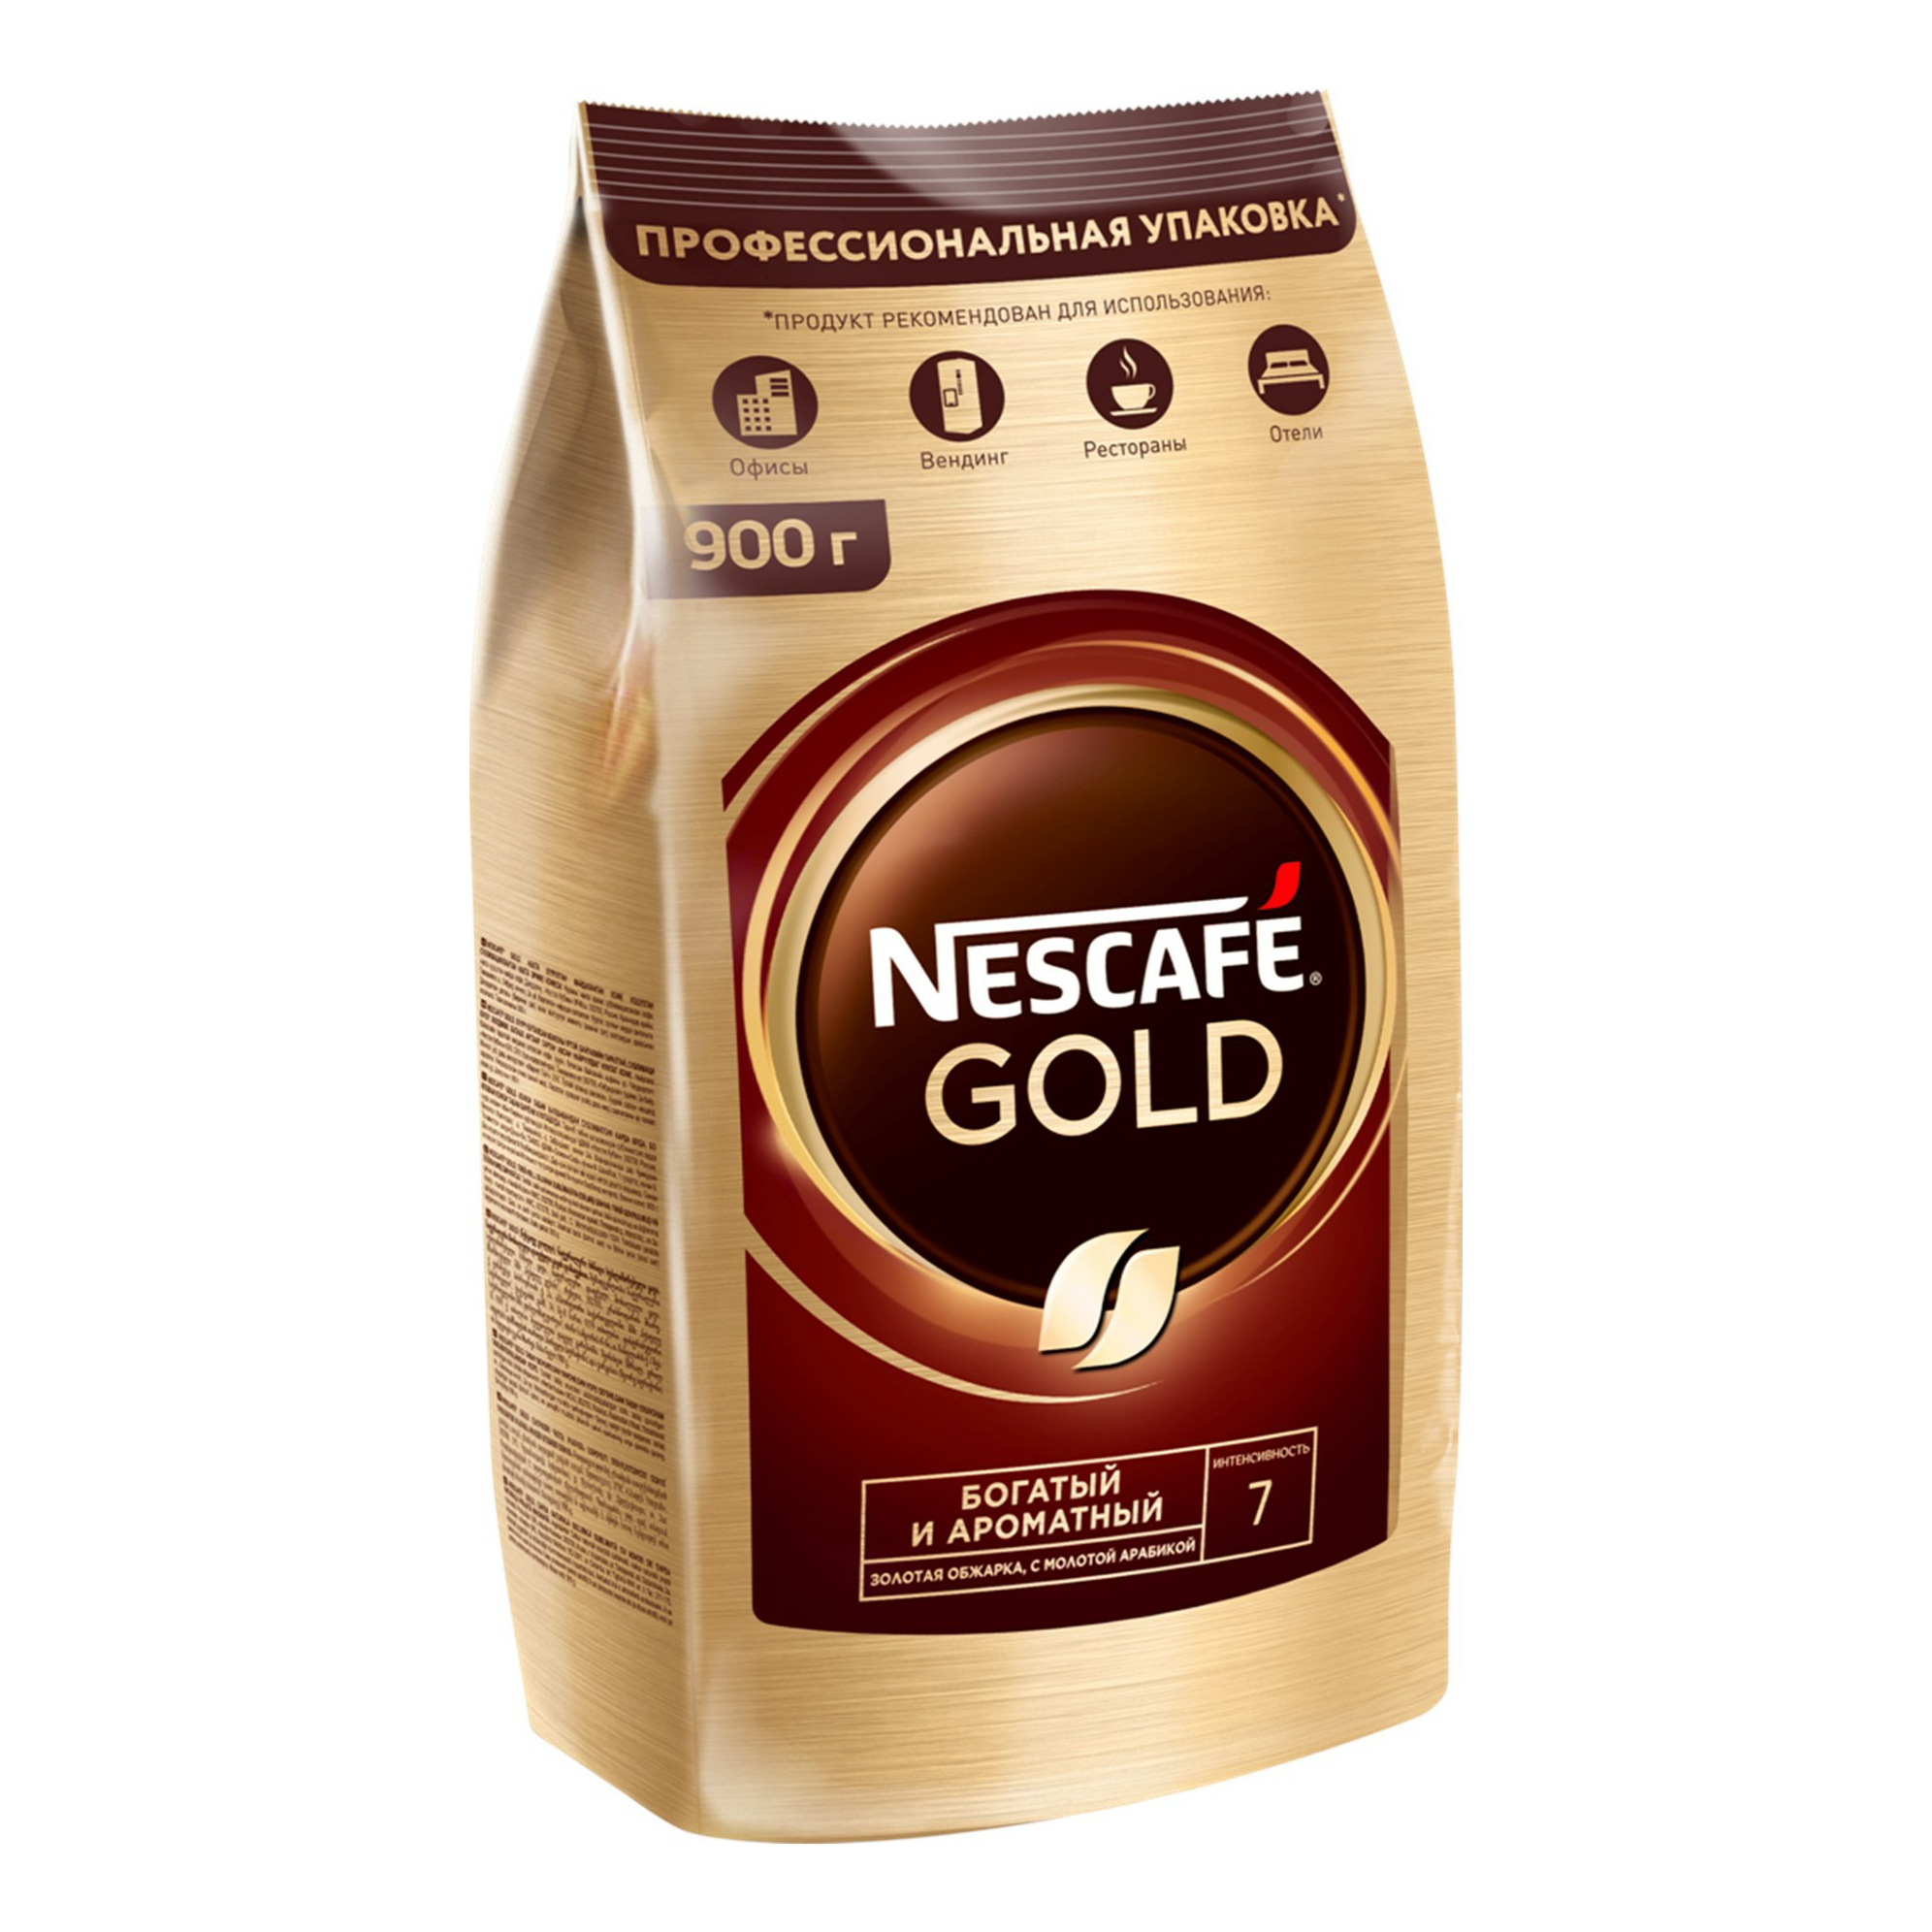 Упаковка кофе нескафе. Nescafe Gold 900. Кофе растворимый Nescafe Gold 750 г. Кофе Нескафе Голд 900 гр. Nescafe кофе Gold 900г..